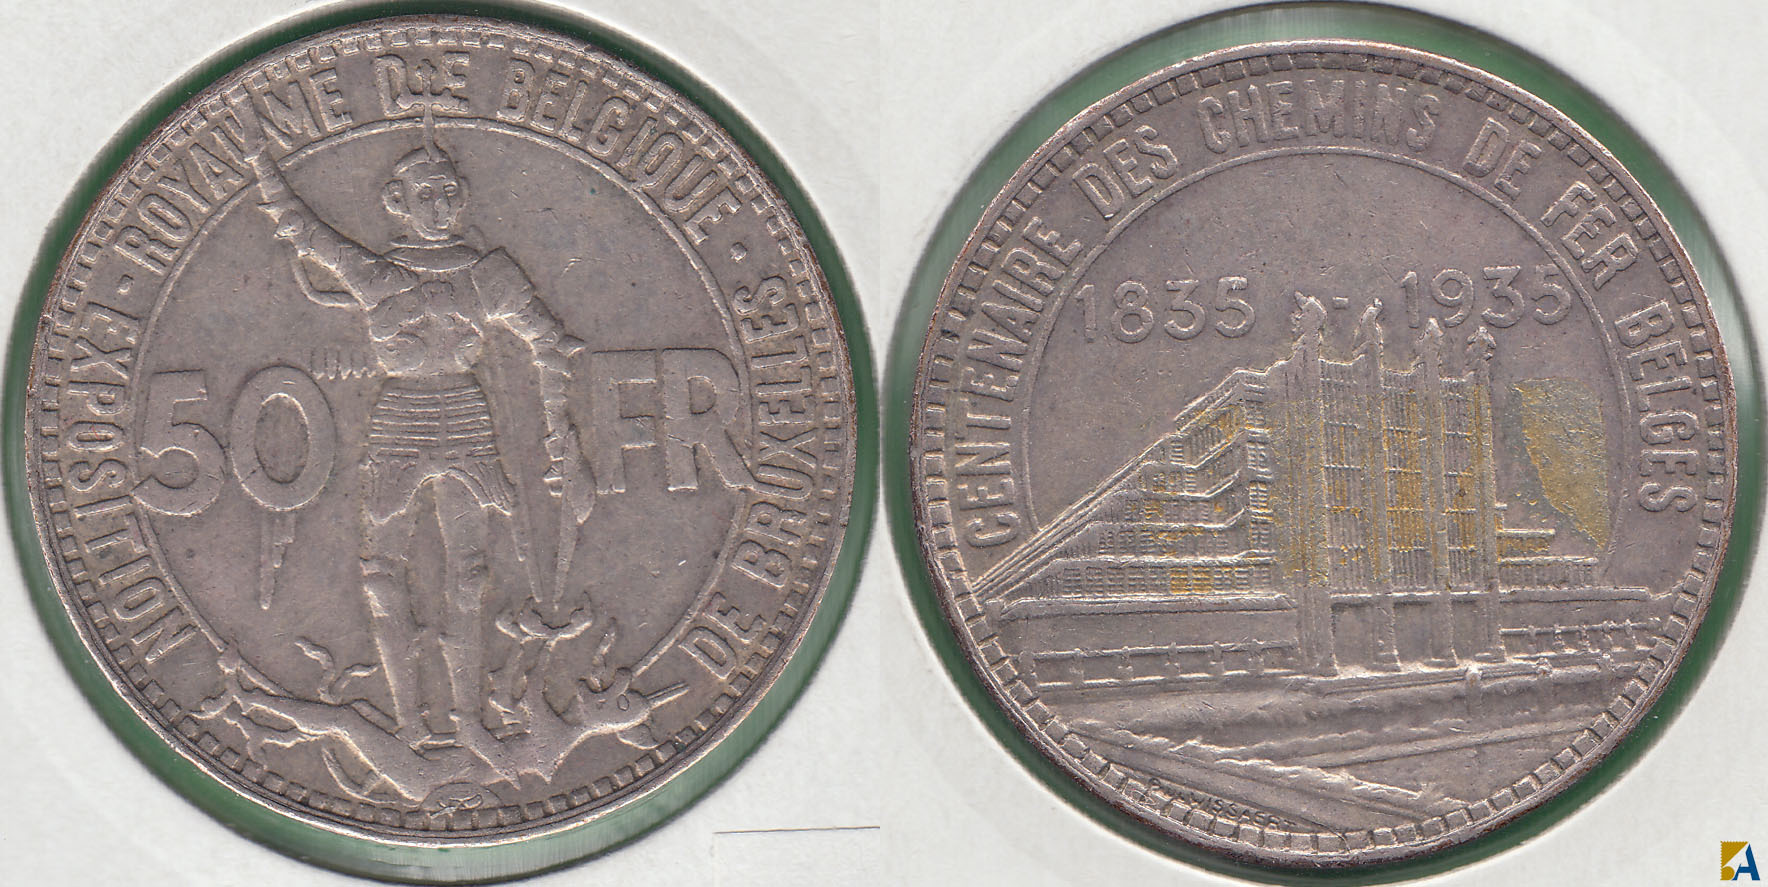 BELGICA - BELGIUM. 50 FRANCOS (FRANCS) DE 1935. PLATA 0.680.